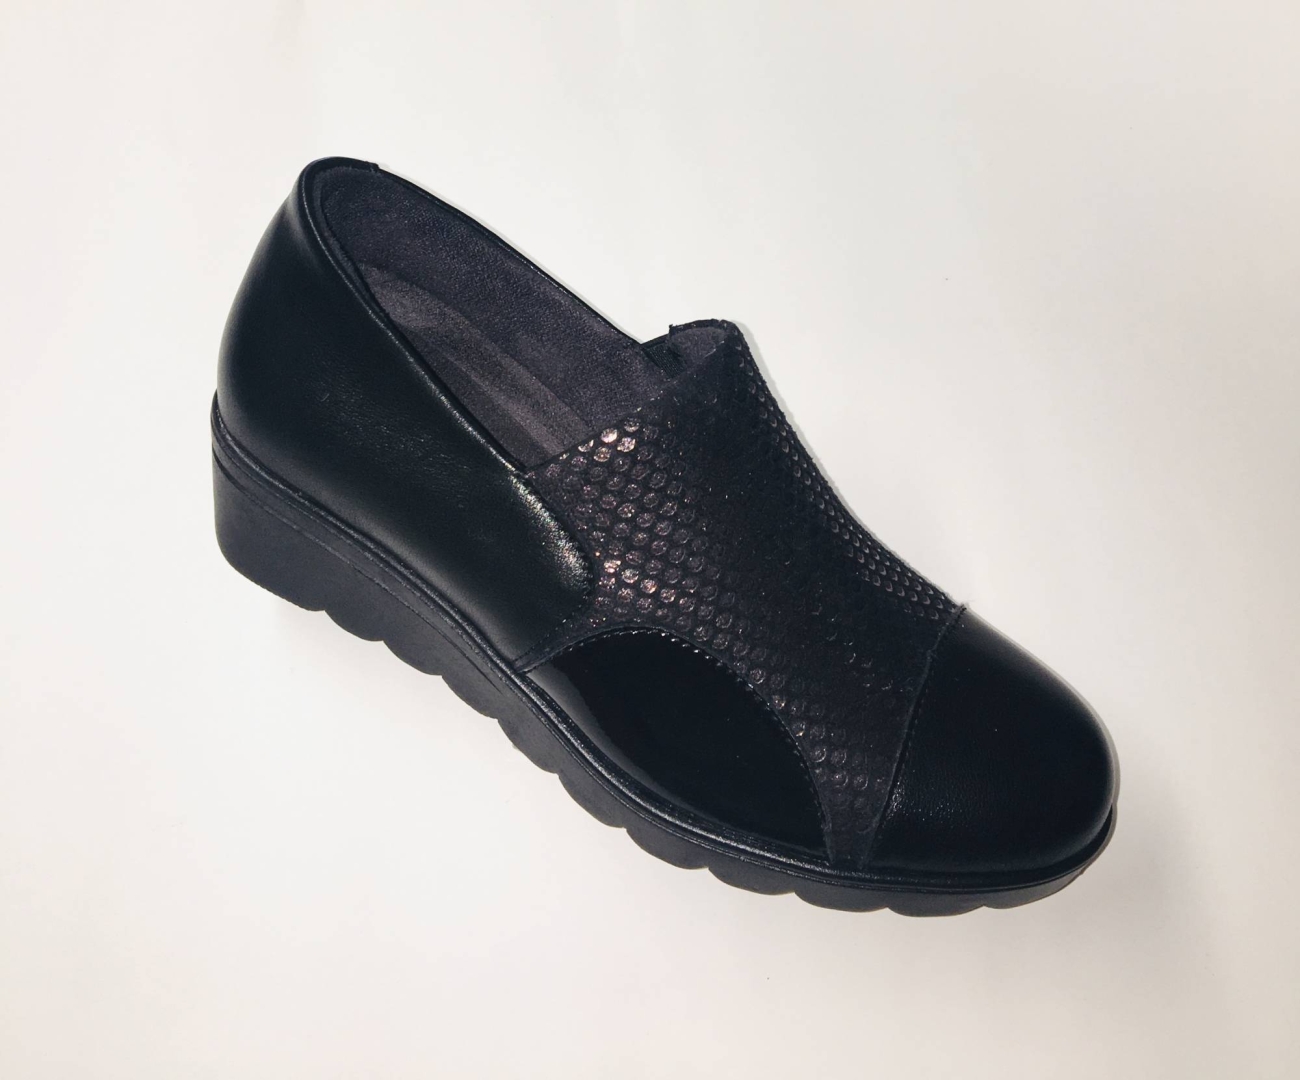 Zapato de mujer de pies delicados en piel negra de CALZAZUL. M-137